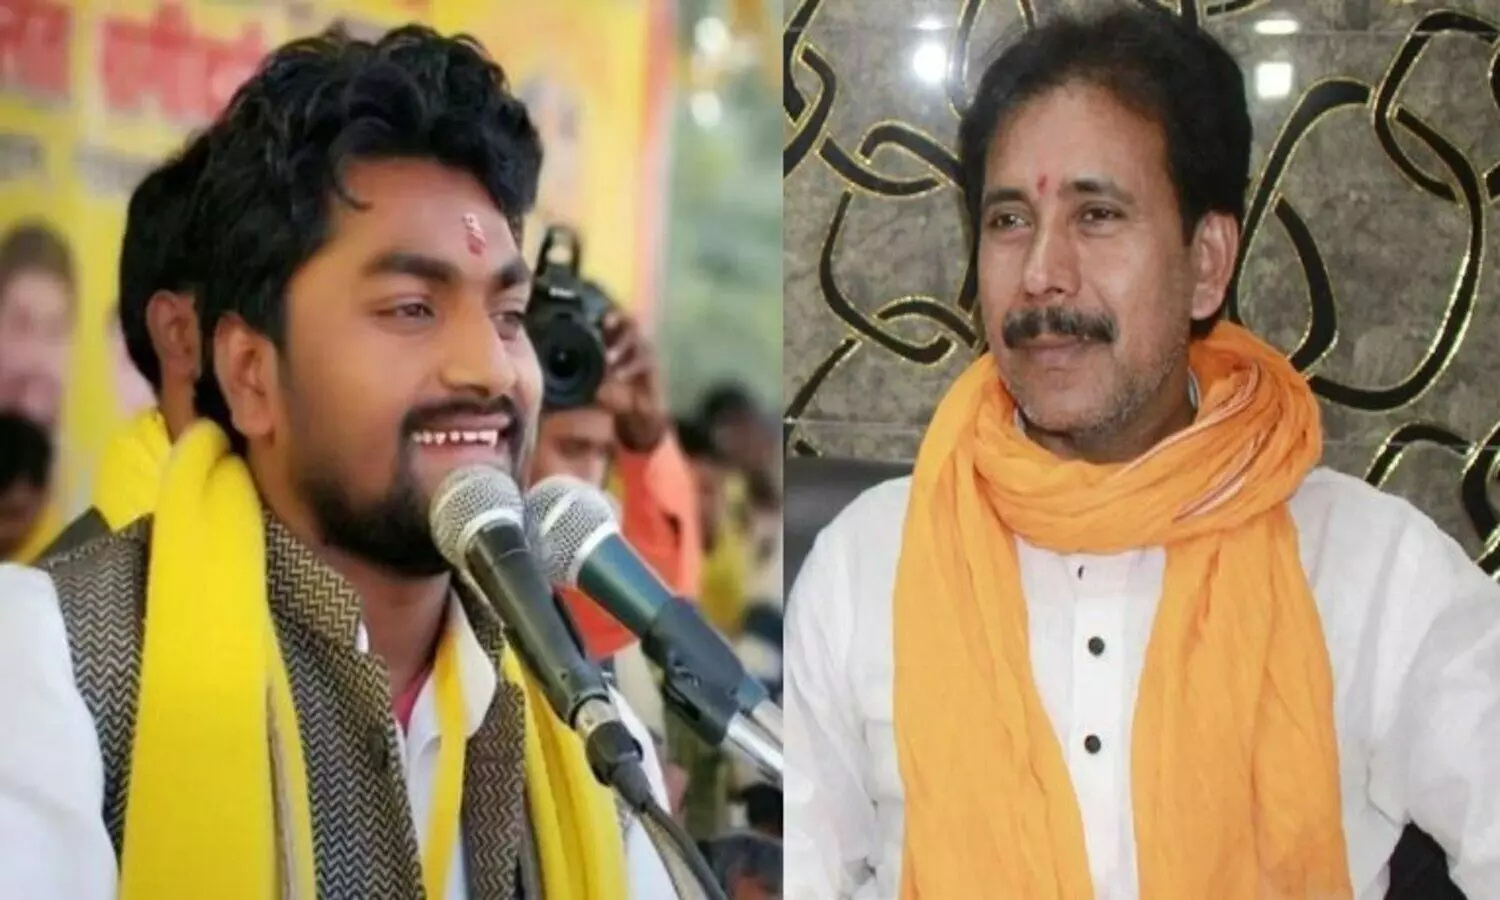 UP Election 2022: वाराणसी की शिवपुर सीट पर राजभर VS राजभर से दिलचस्प हुई जंग, सपा के दावेदारों को लगा झटका